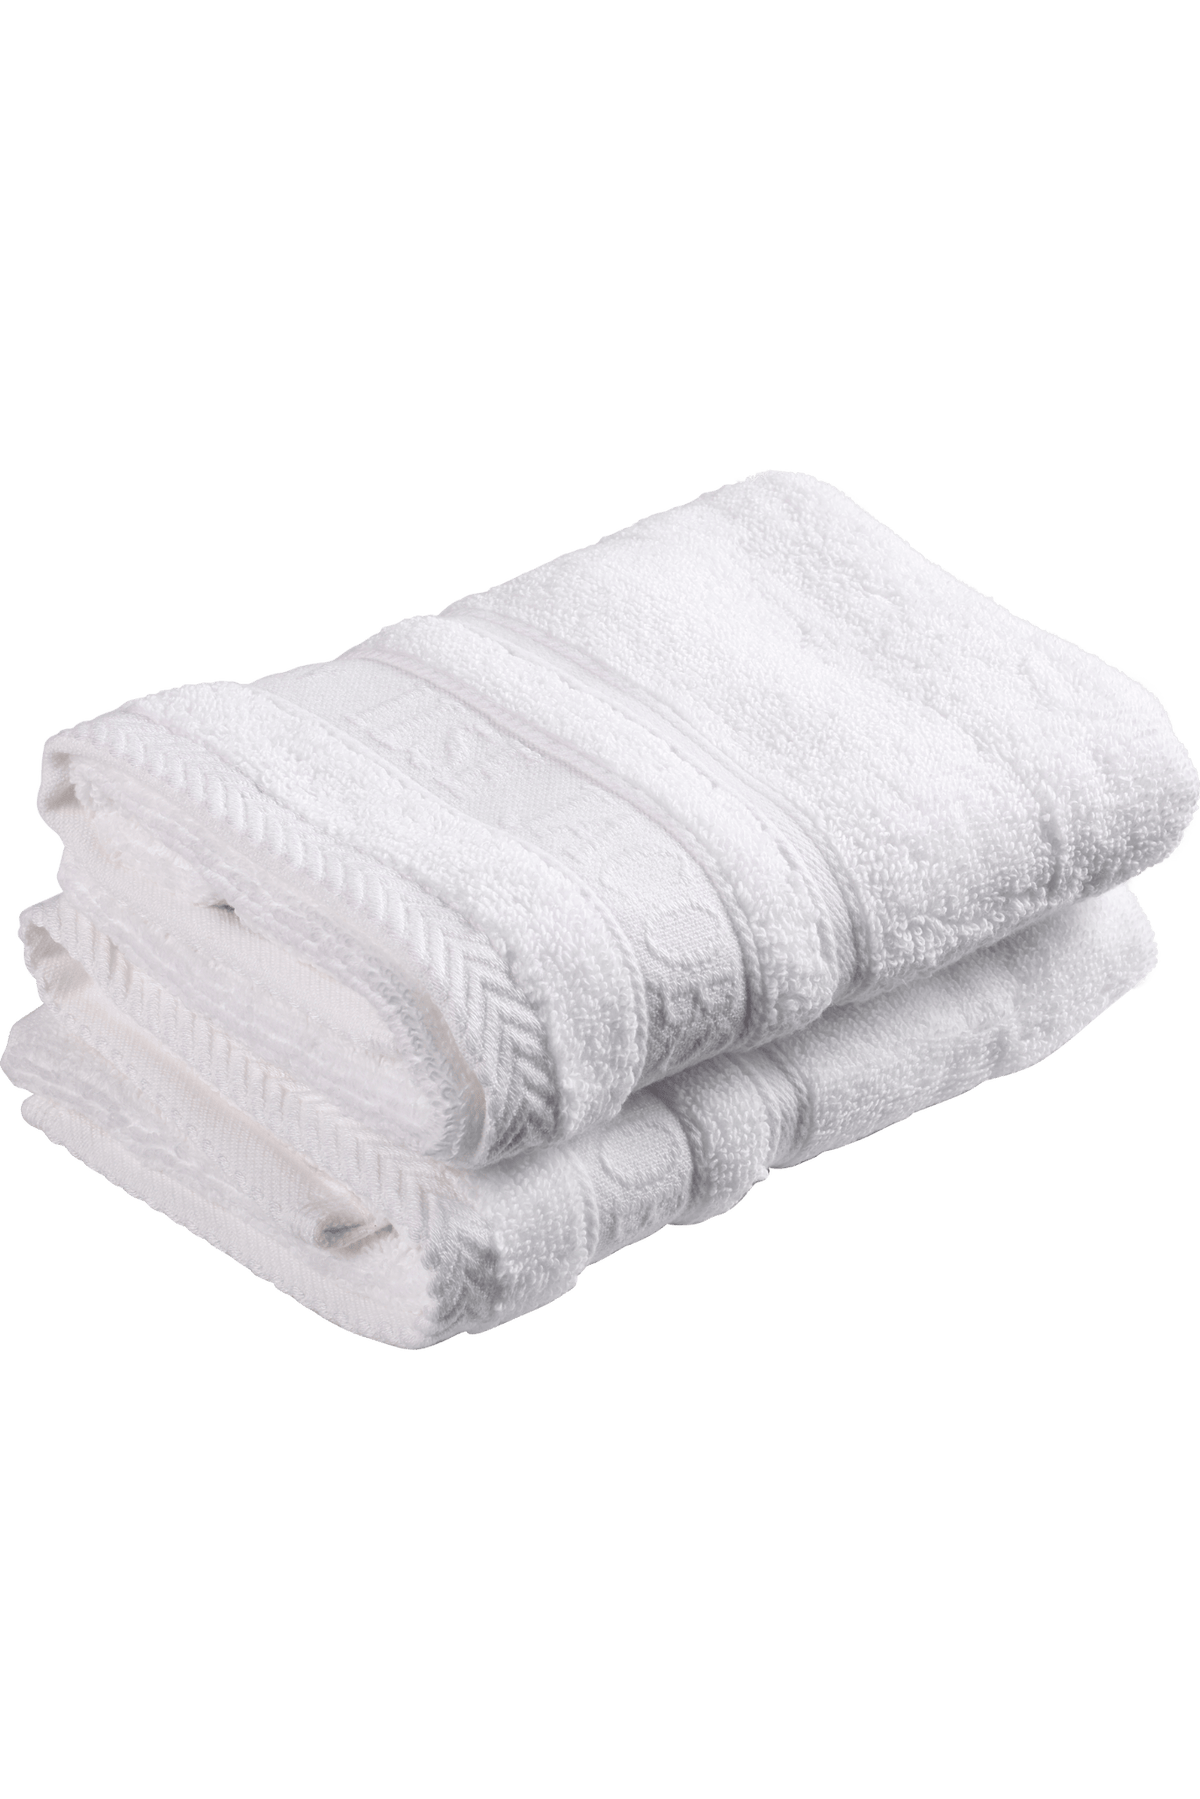 Guest Towel - White Cotton